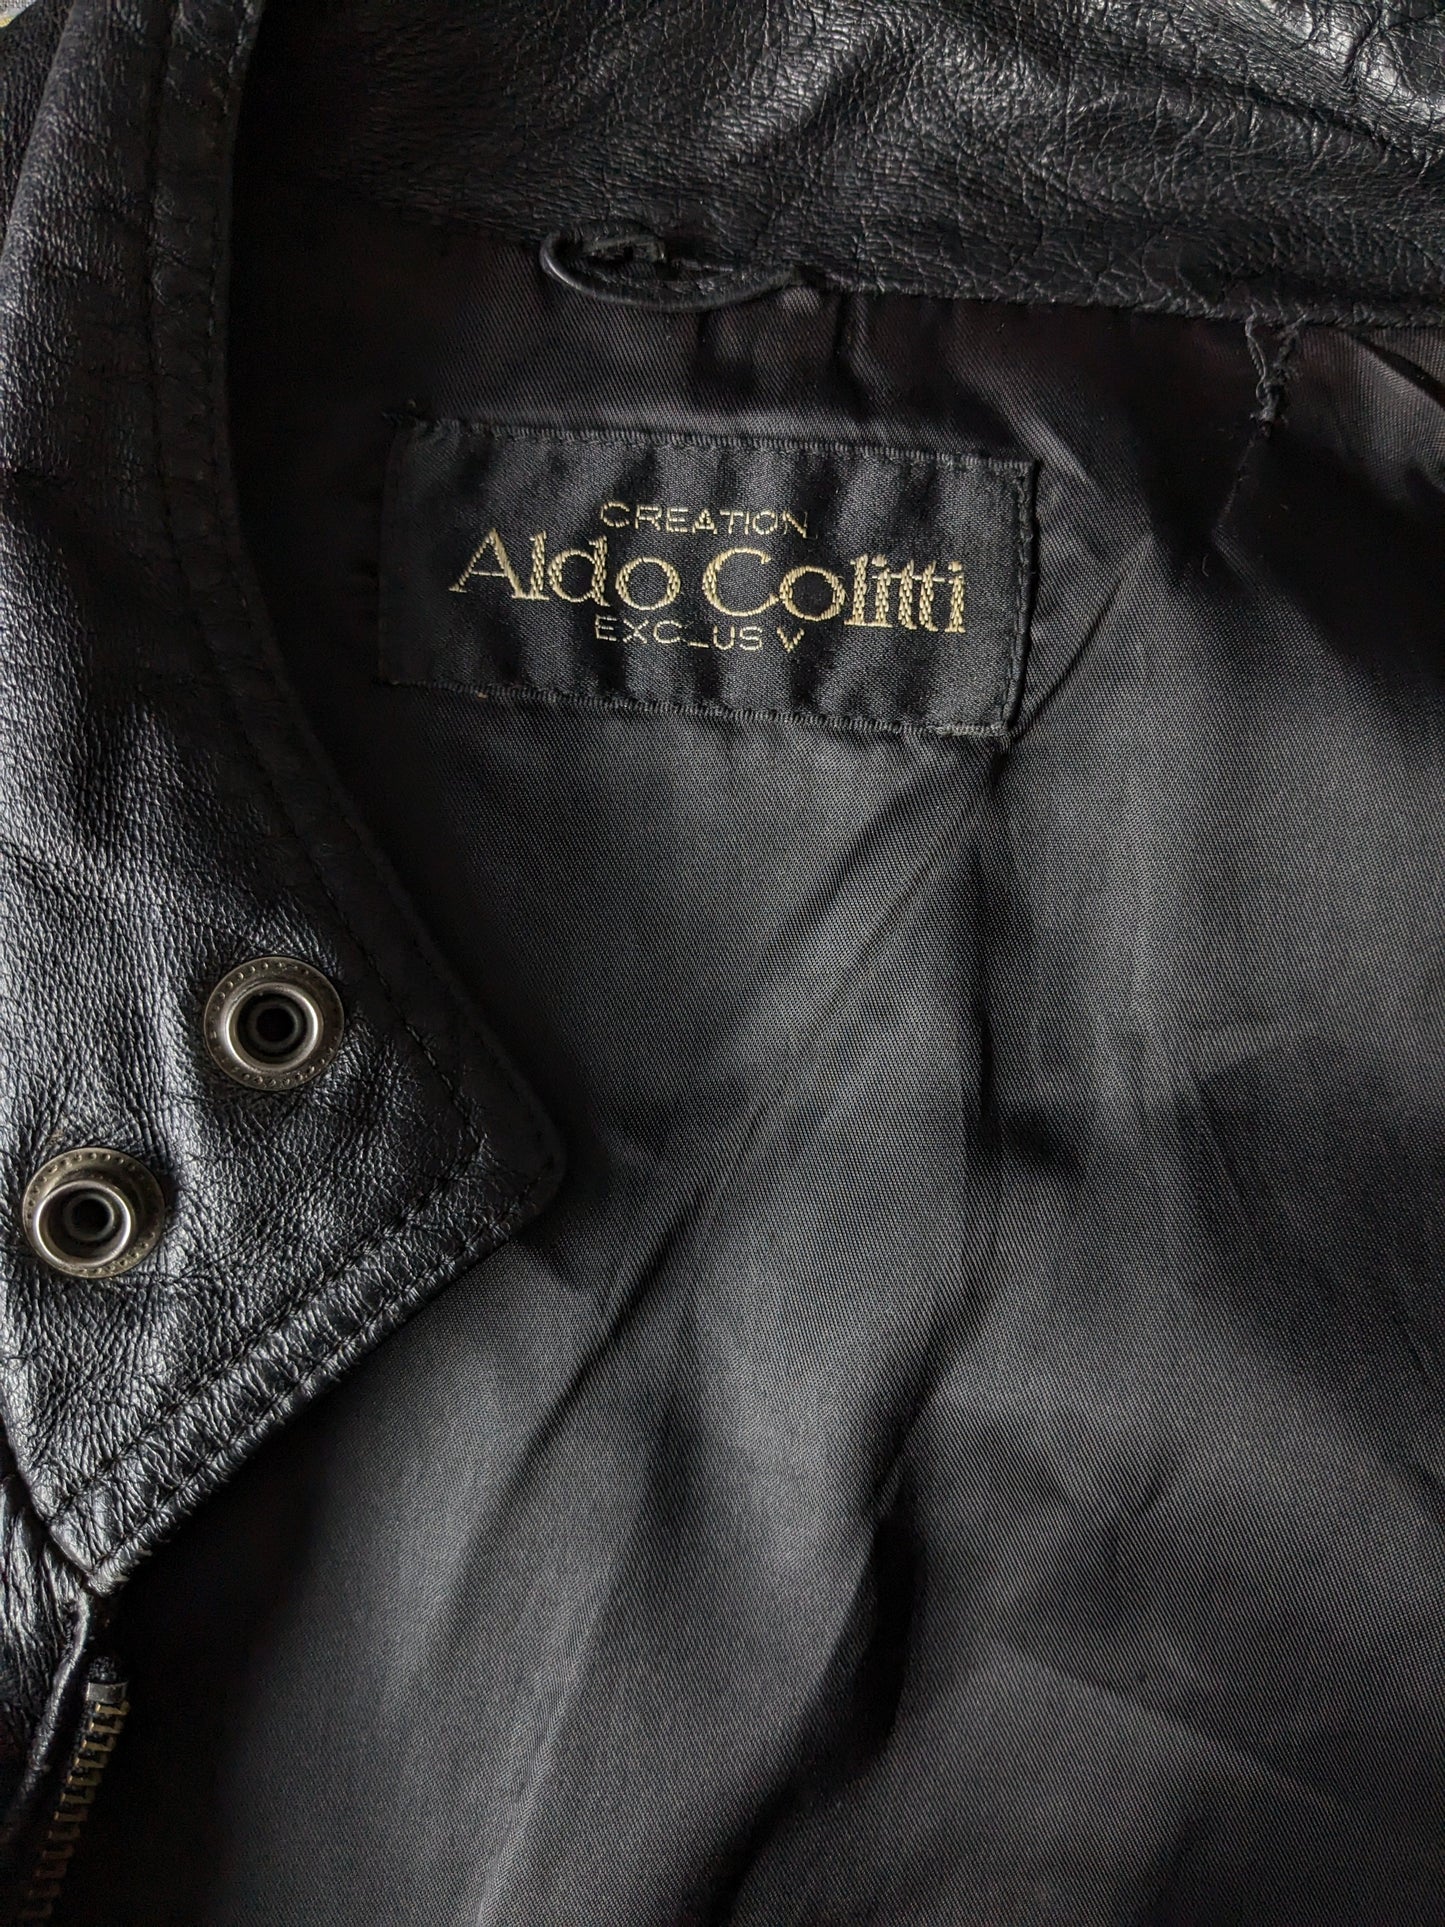 Vintage Aldo Colitti 80 - 90's apprend du corps / gilet à gilet avec des poches intérieures. Noir. Taille L.